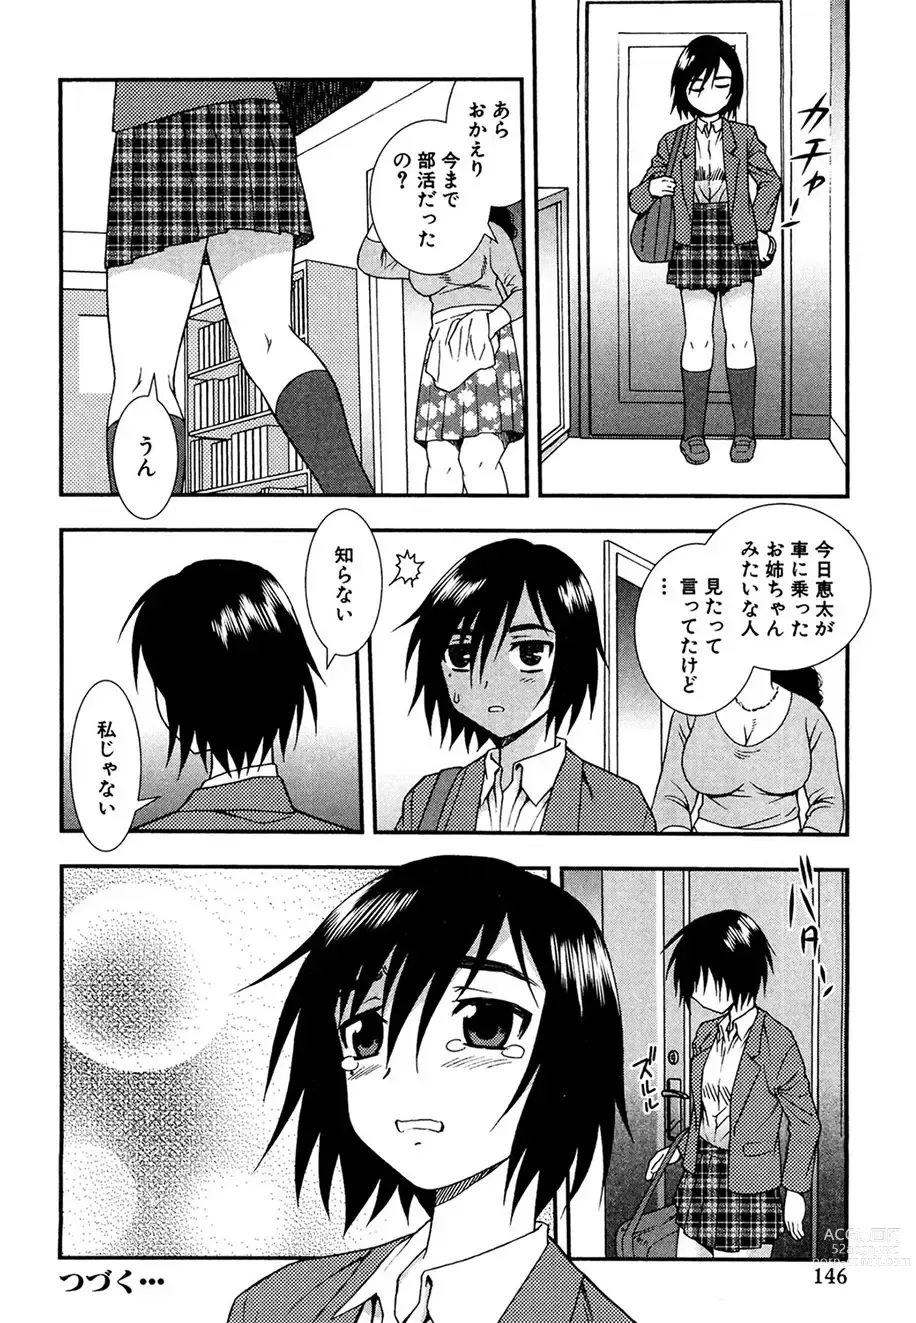 Page 145 of manga Onna Kyoushi Chijoku no Kusari -NIGHTMARE-